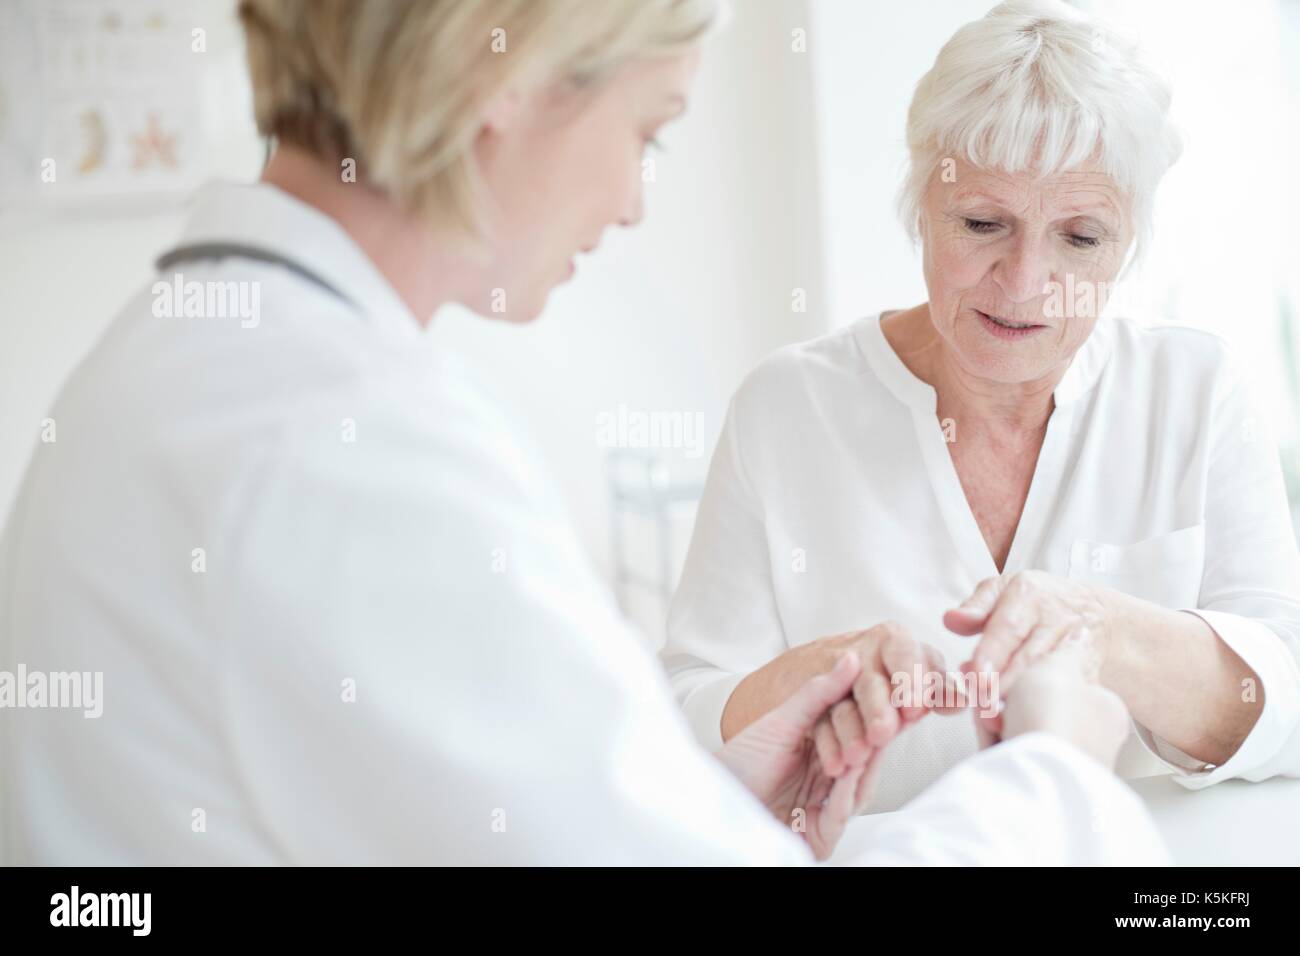 Ärztin untersuchen die Hand des älteren Patienten. Stockfoto